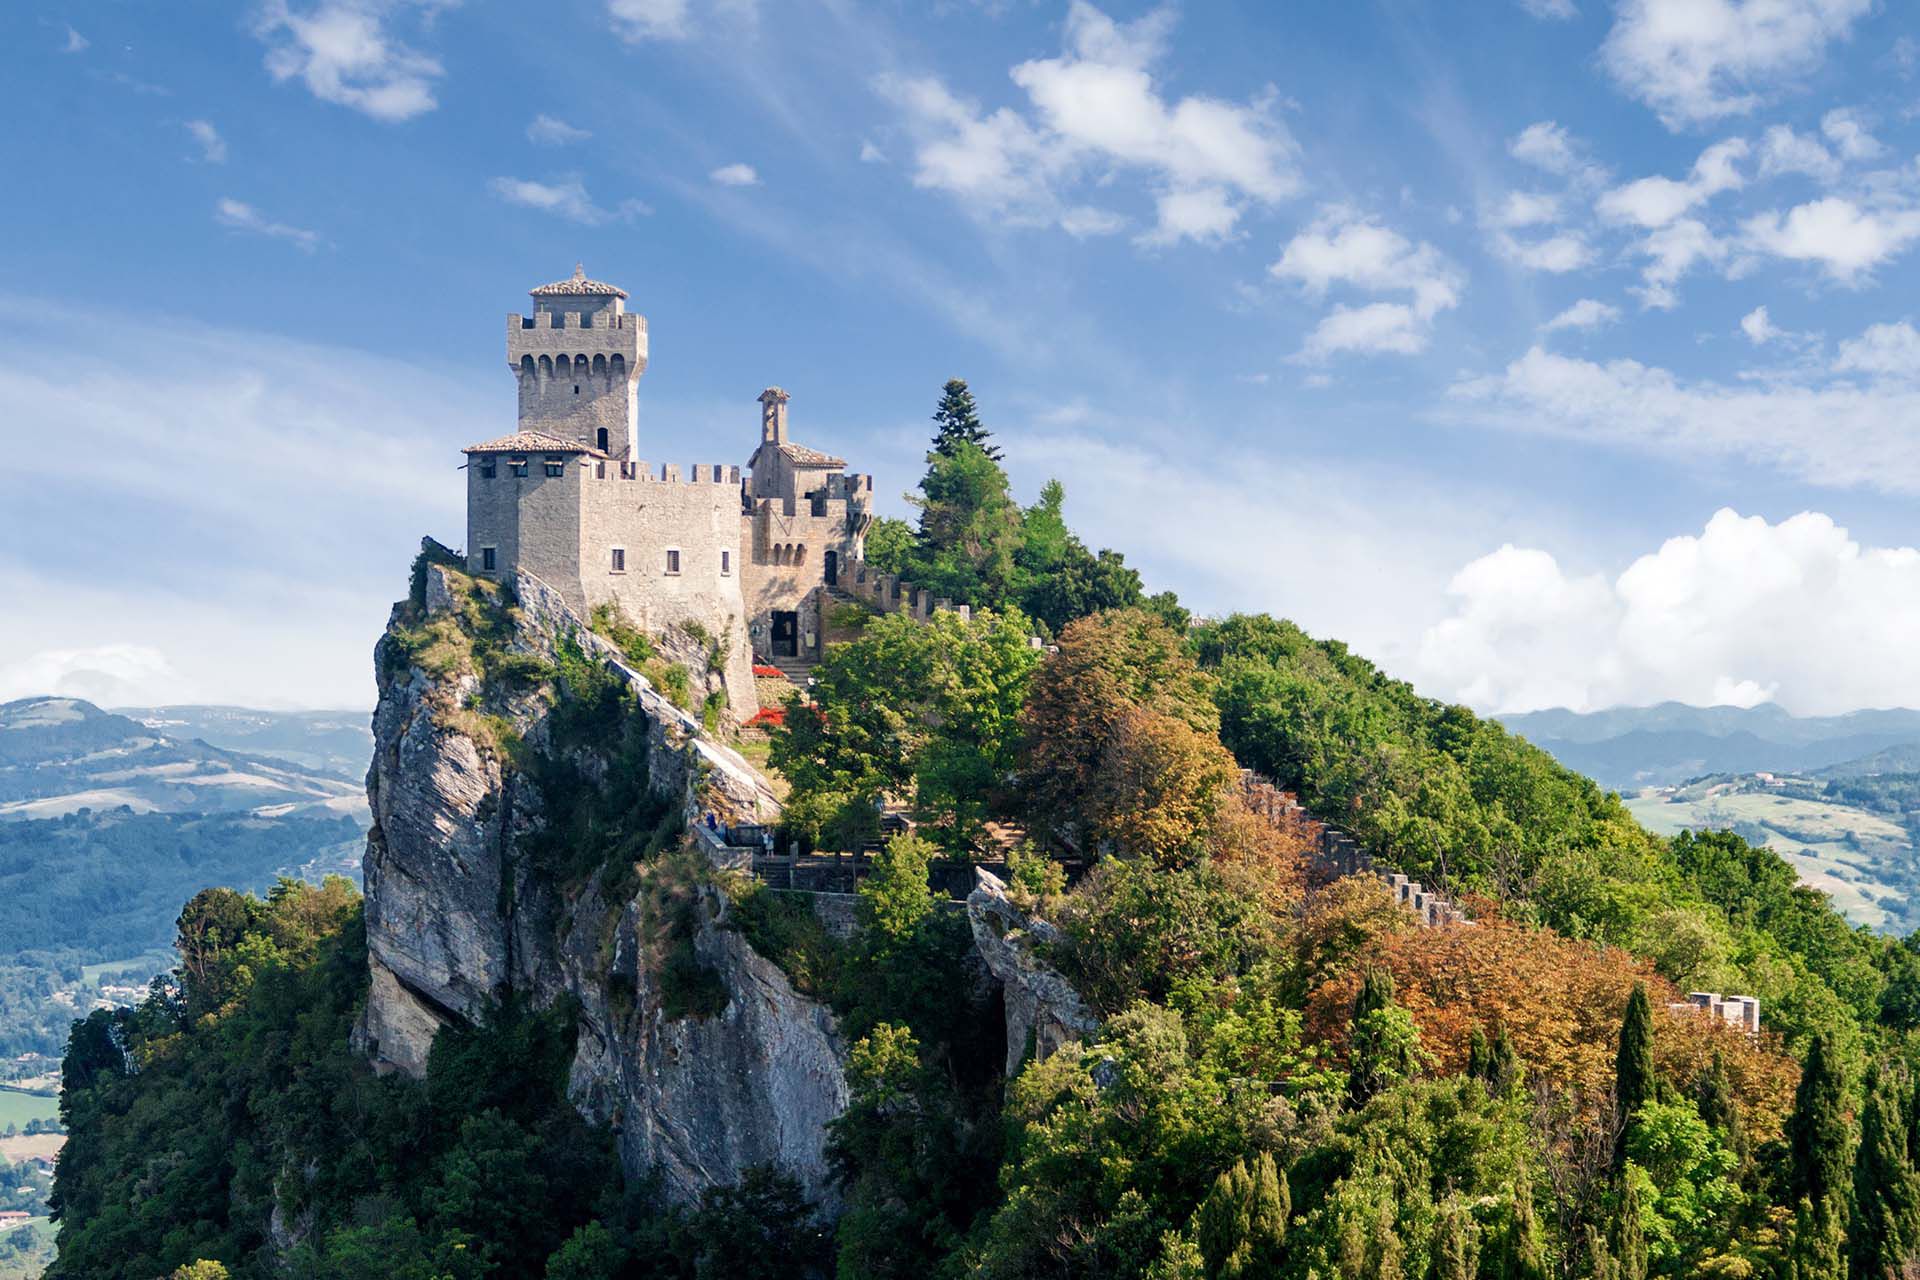 Ubicado en el este, justo por encima de la pantorrilla exterior de la bota de Italia, San Marino es completamente independiente del país que lo rodea. De campos de estilo toscano y hermosas calles empedradas, el lugar tiene su propio castillo de cuento de hadas en la cima de Monte Titano, Patrimonio de la Humanidad por la UNESCO